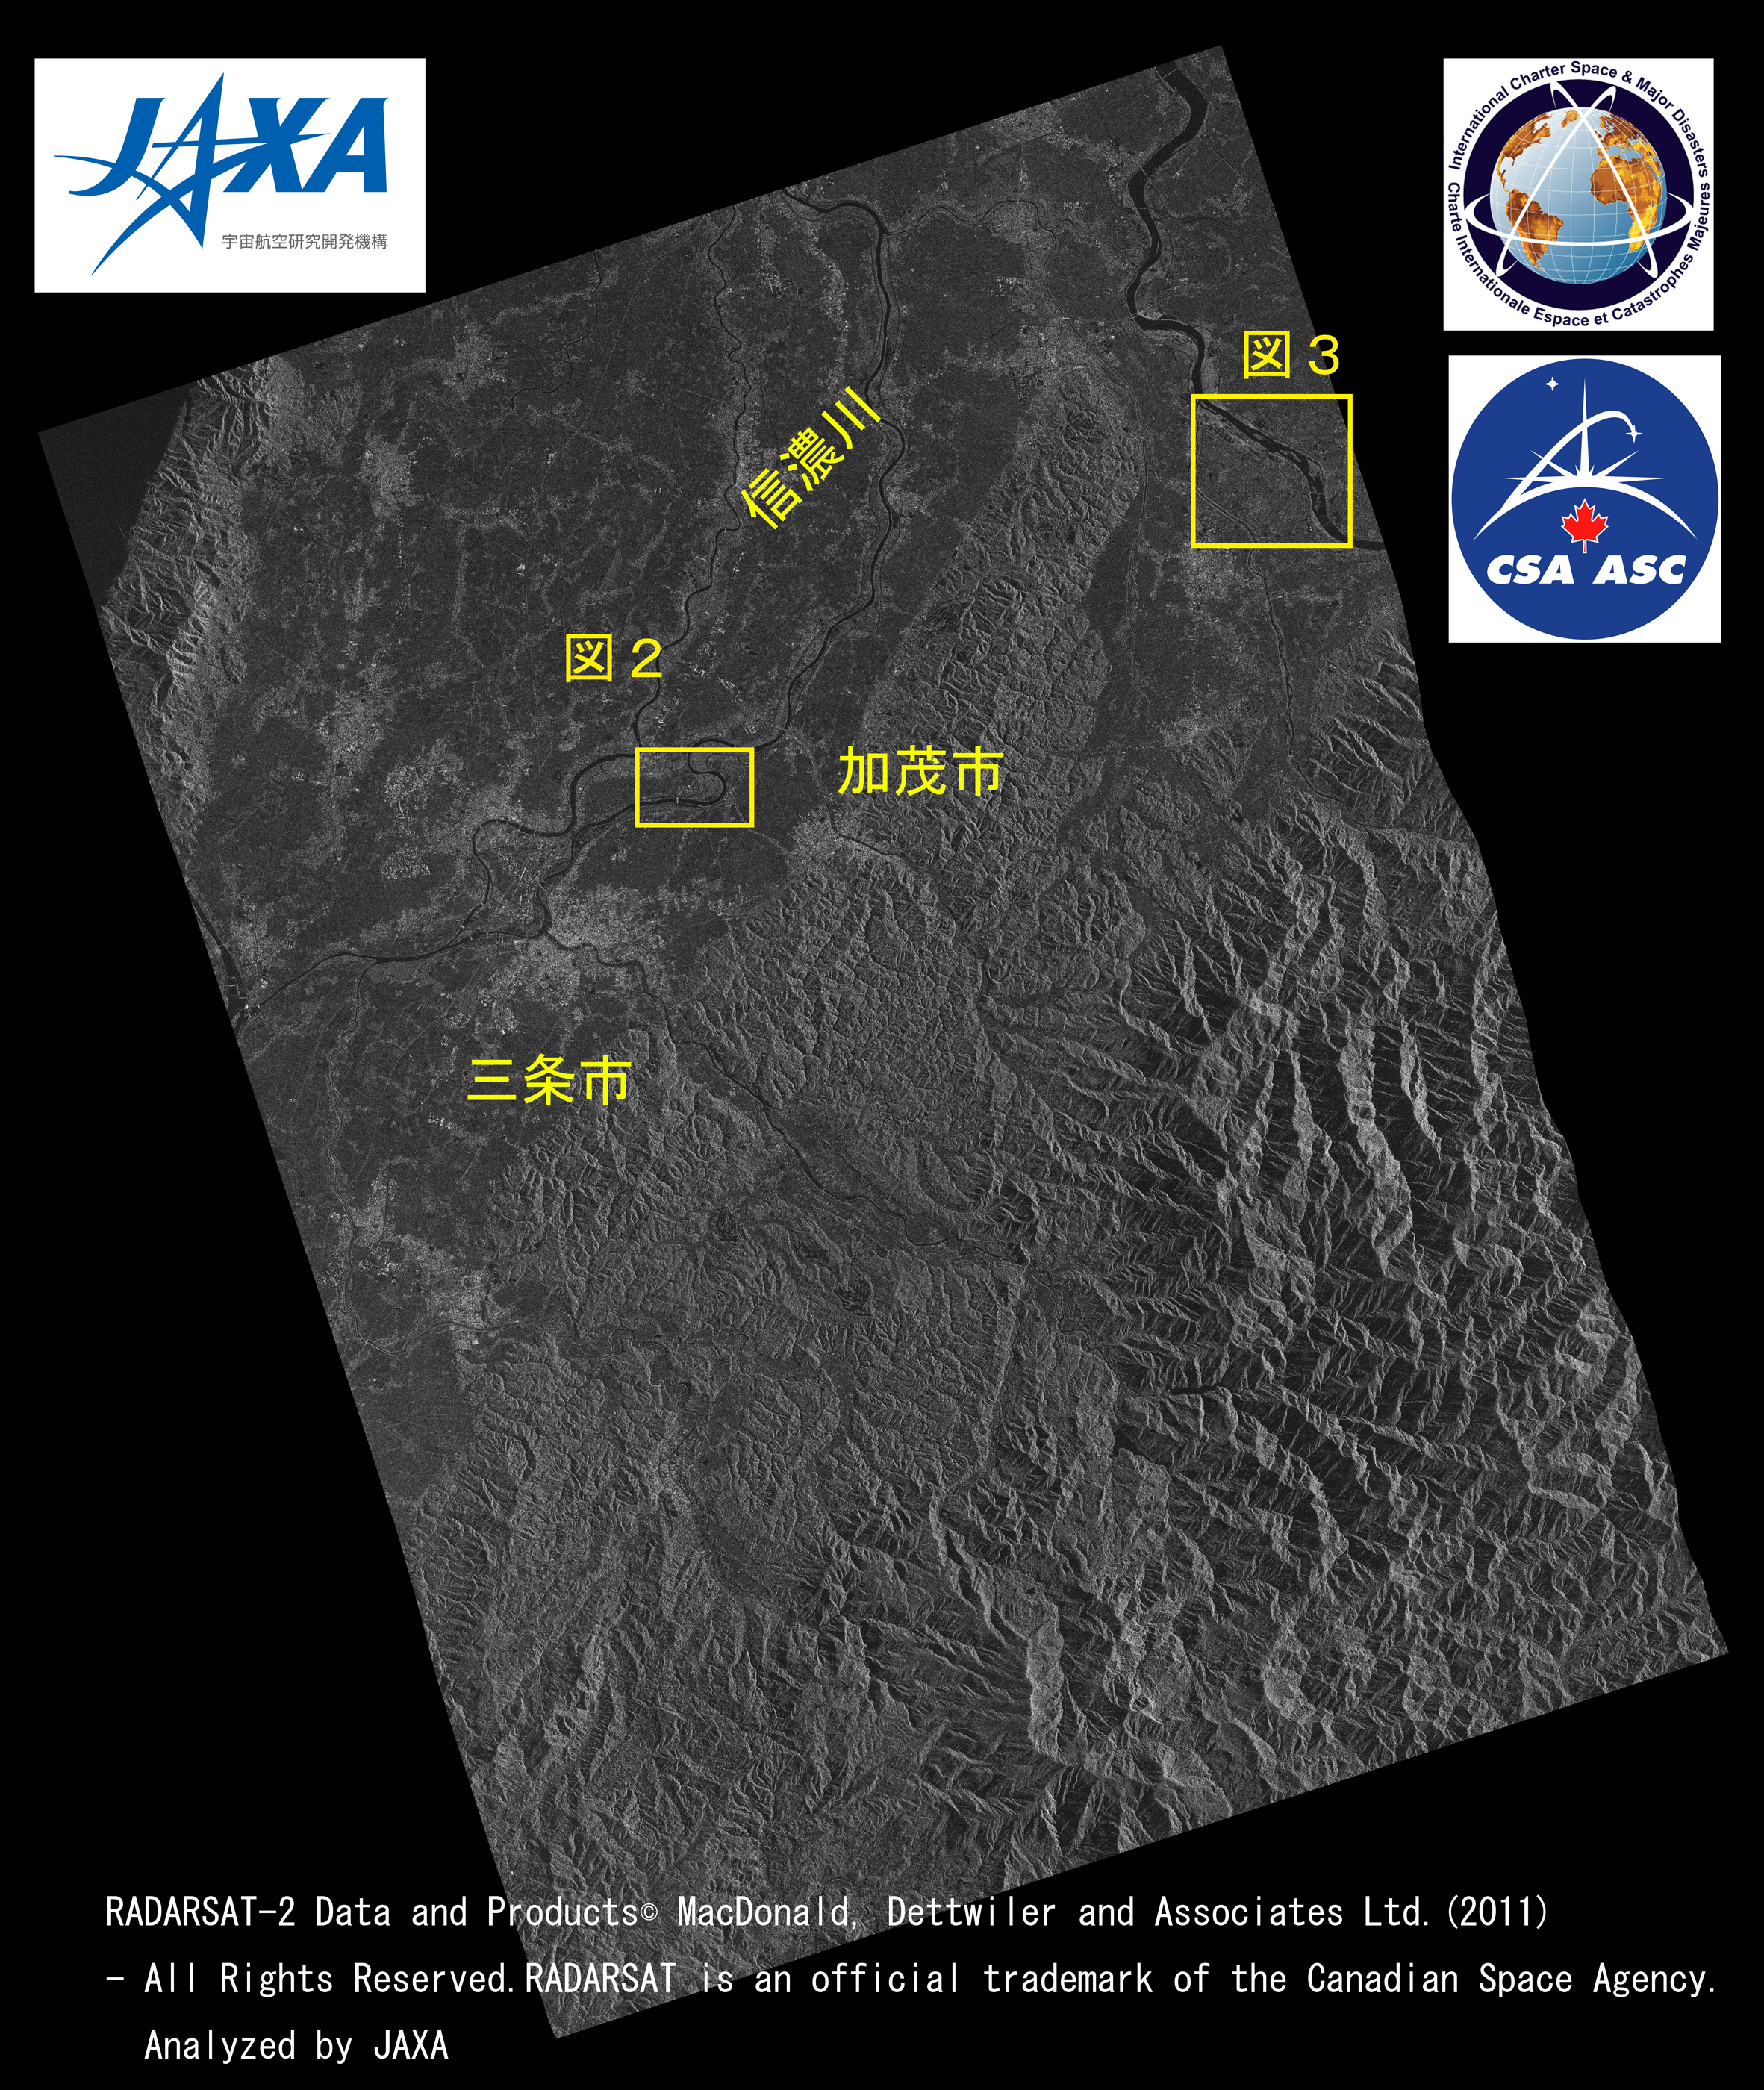 図1: RADARSAT-2観測による新潟県画像(2011年8月1日観測)